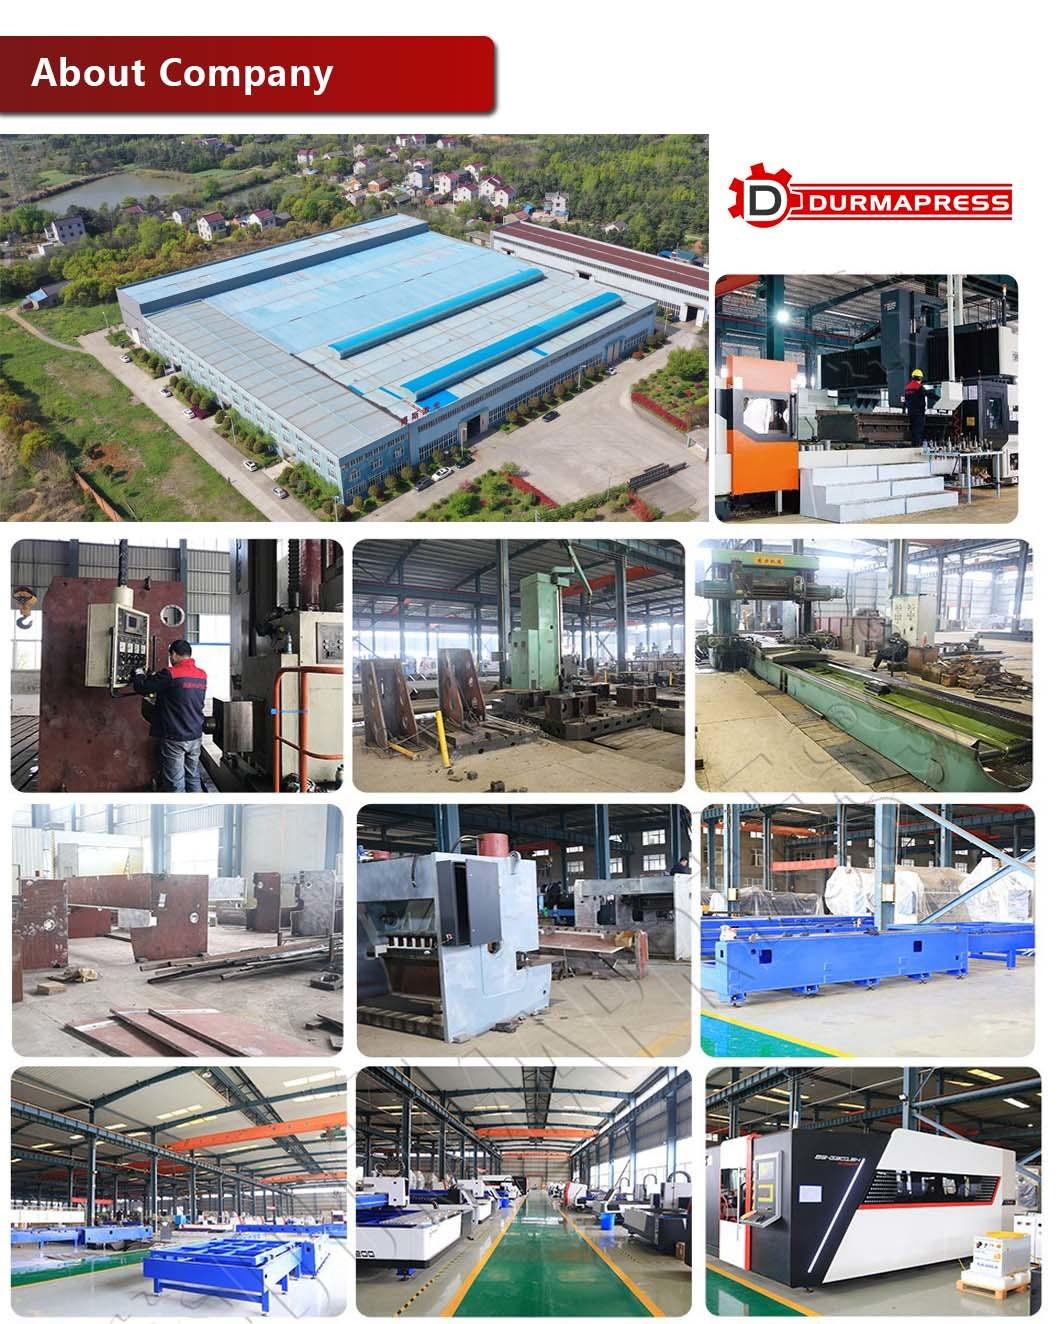 High Power CNC Fiber Laser Cutting Metal Machine 500W in China Durmapress Company in Anhui Province